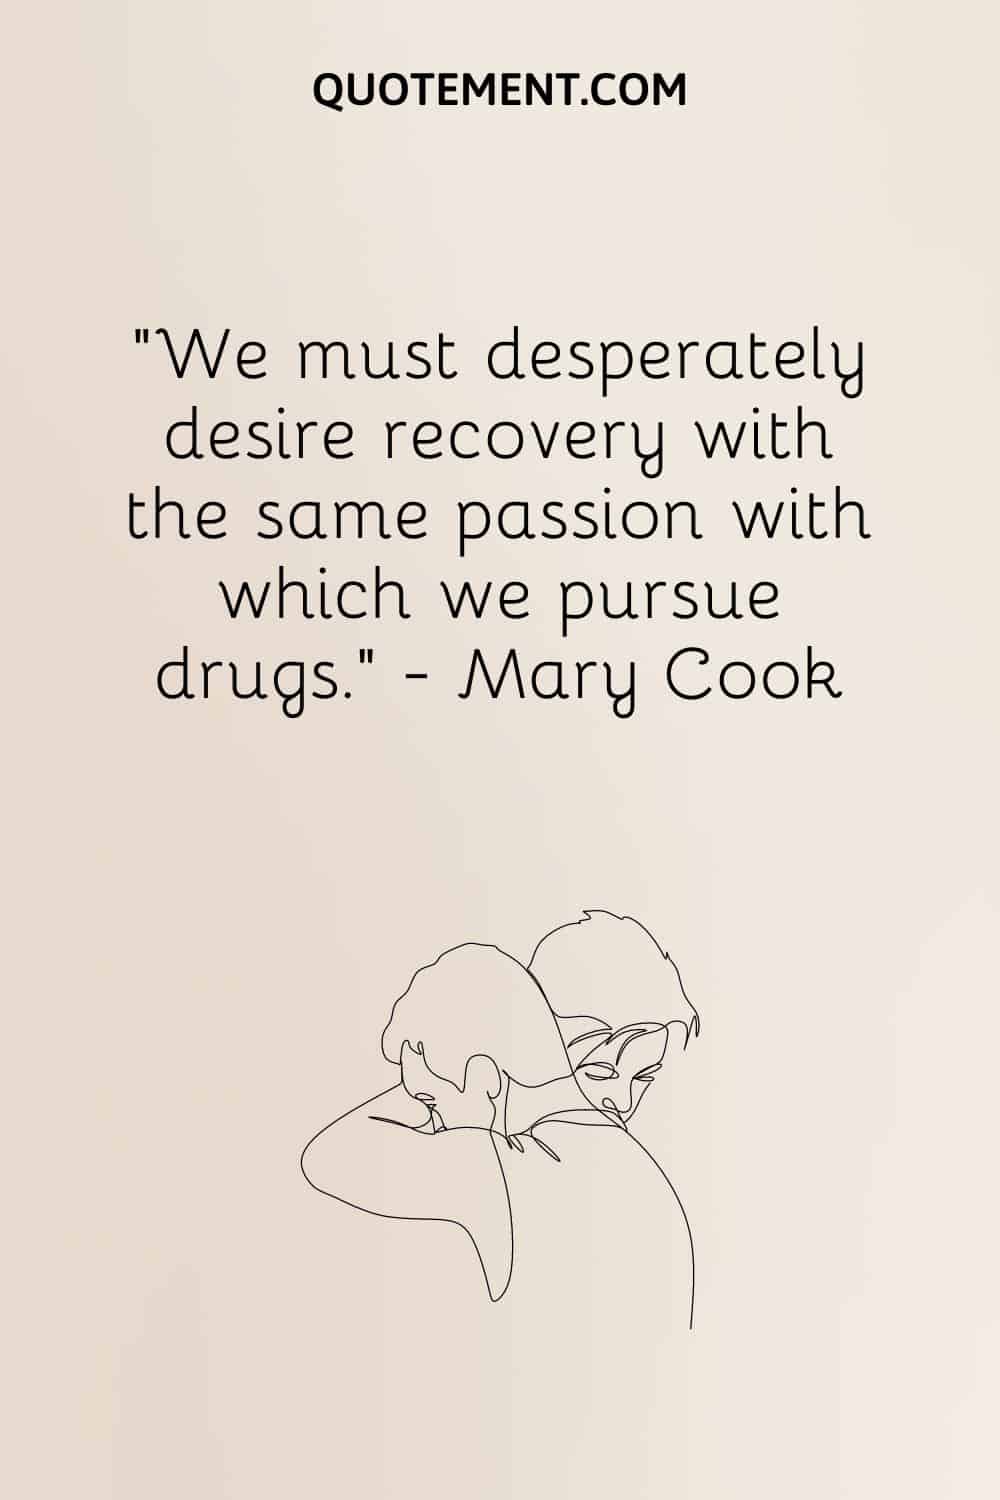 Debemos desear desesperadamente la recuperación con la misma pasión con la que perseguimos las drogas